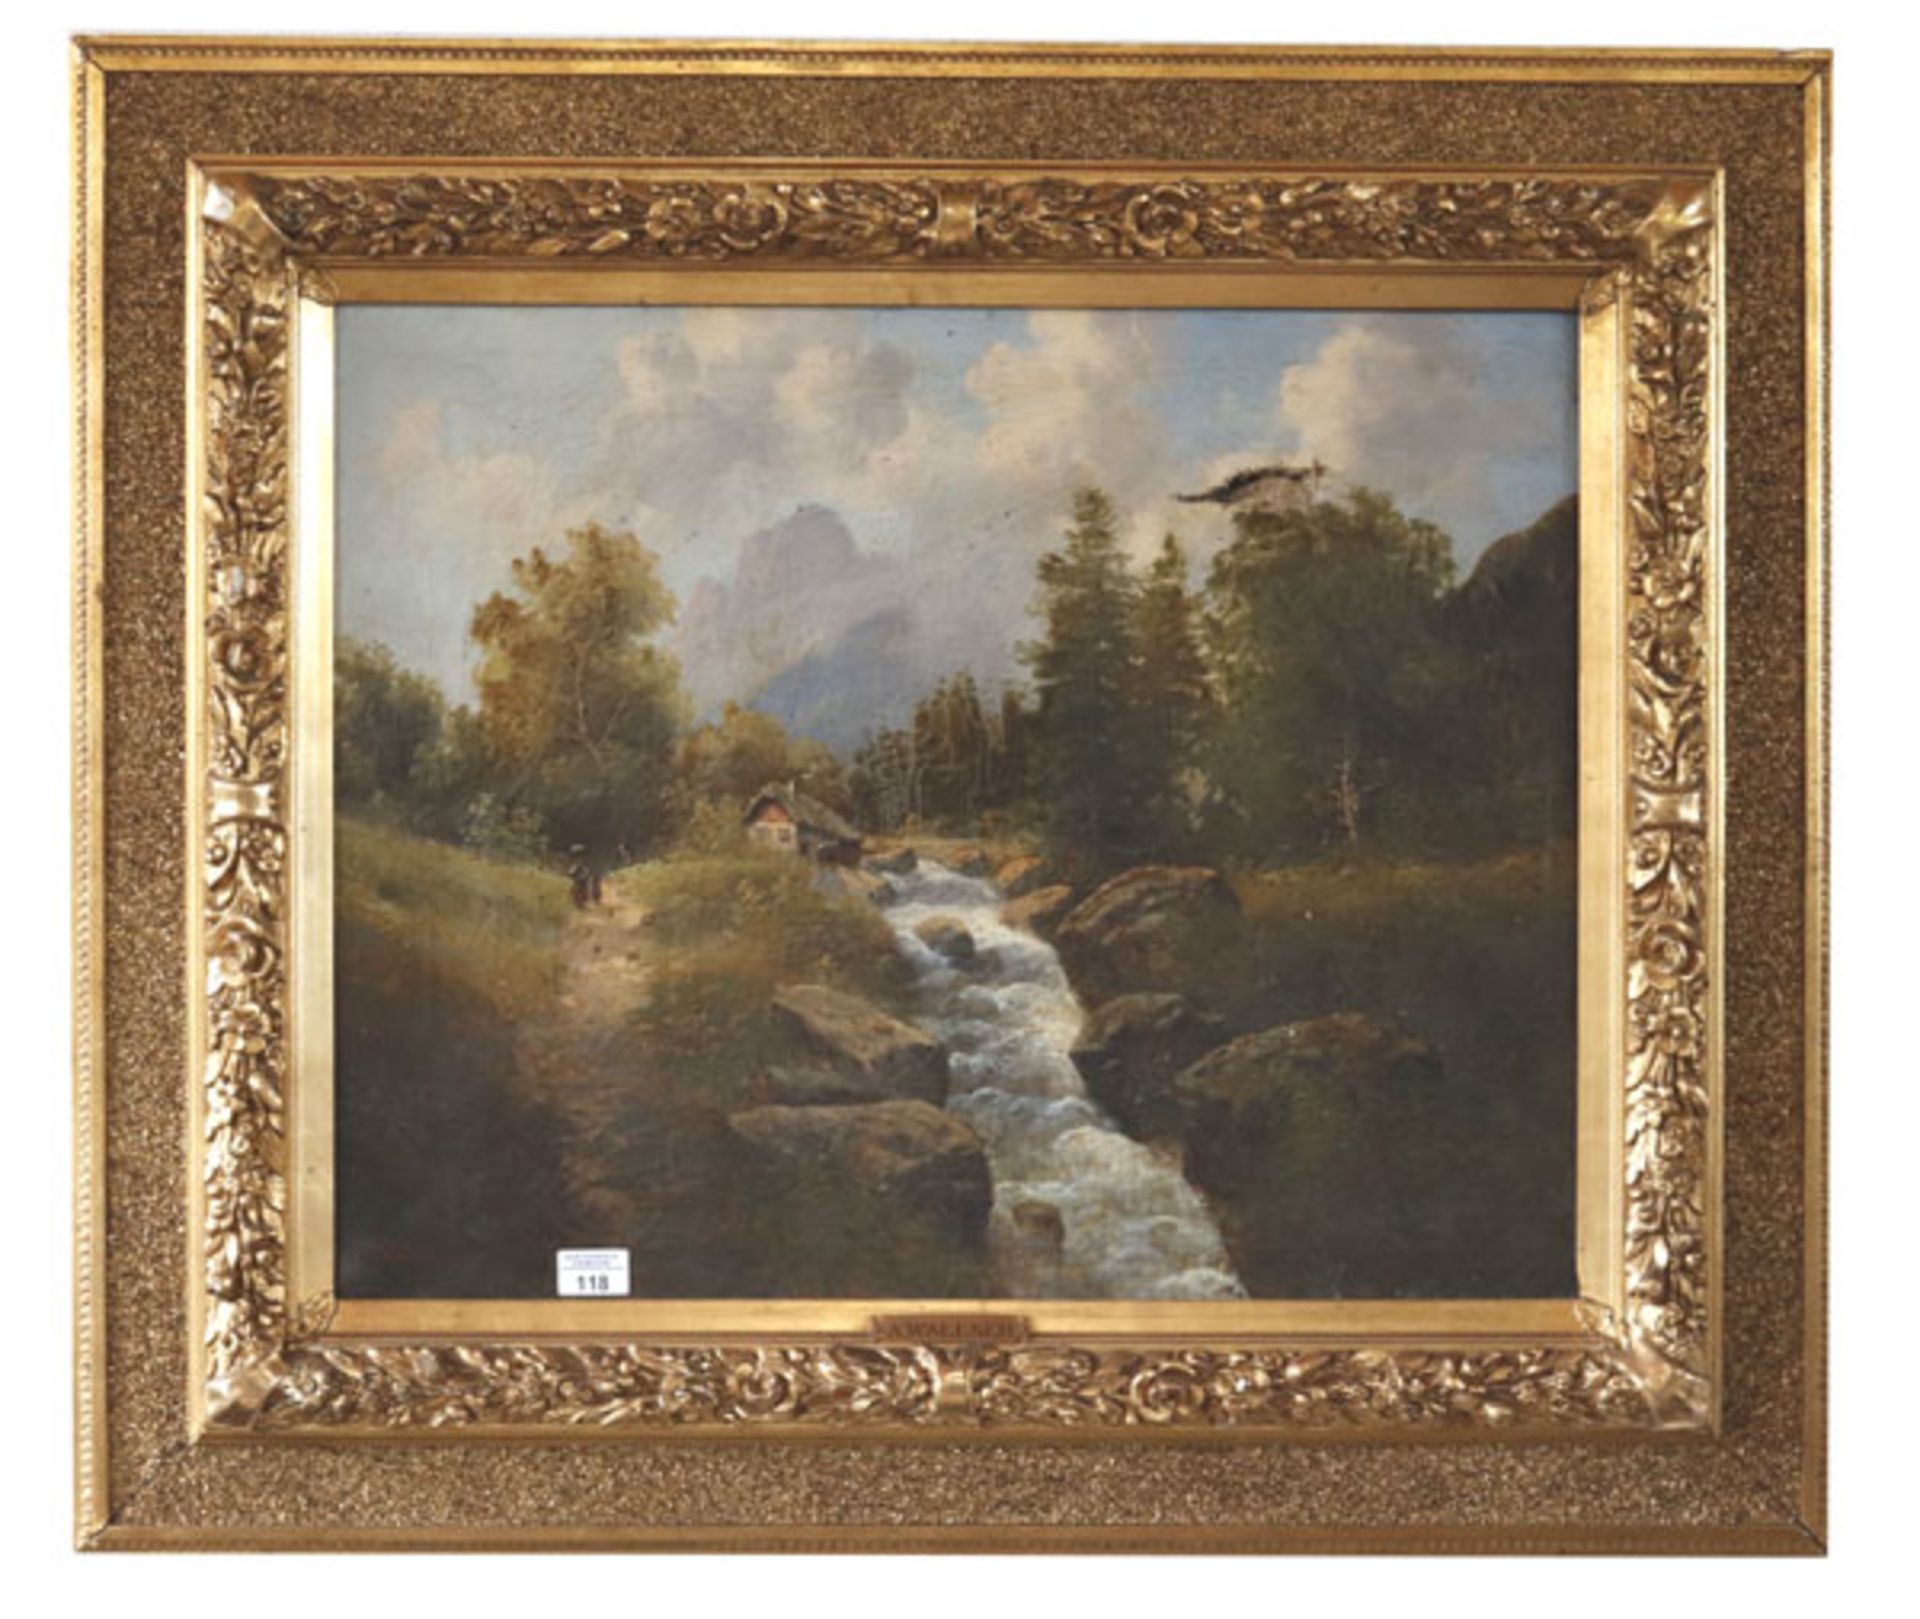 Gemälde ÖL/LW 'Romantische Landschafts-Szenerie mit Bachlauf', signiert A. Wallner, wohl Anton, LW